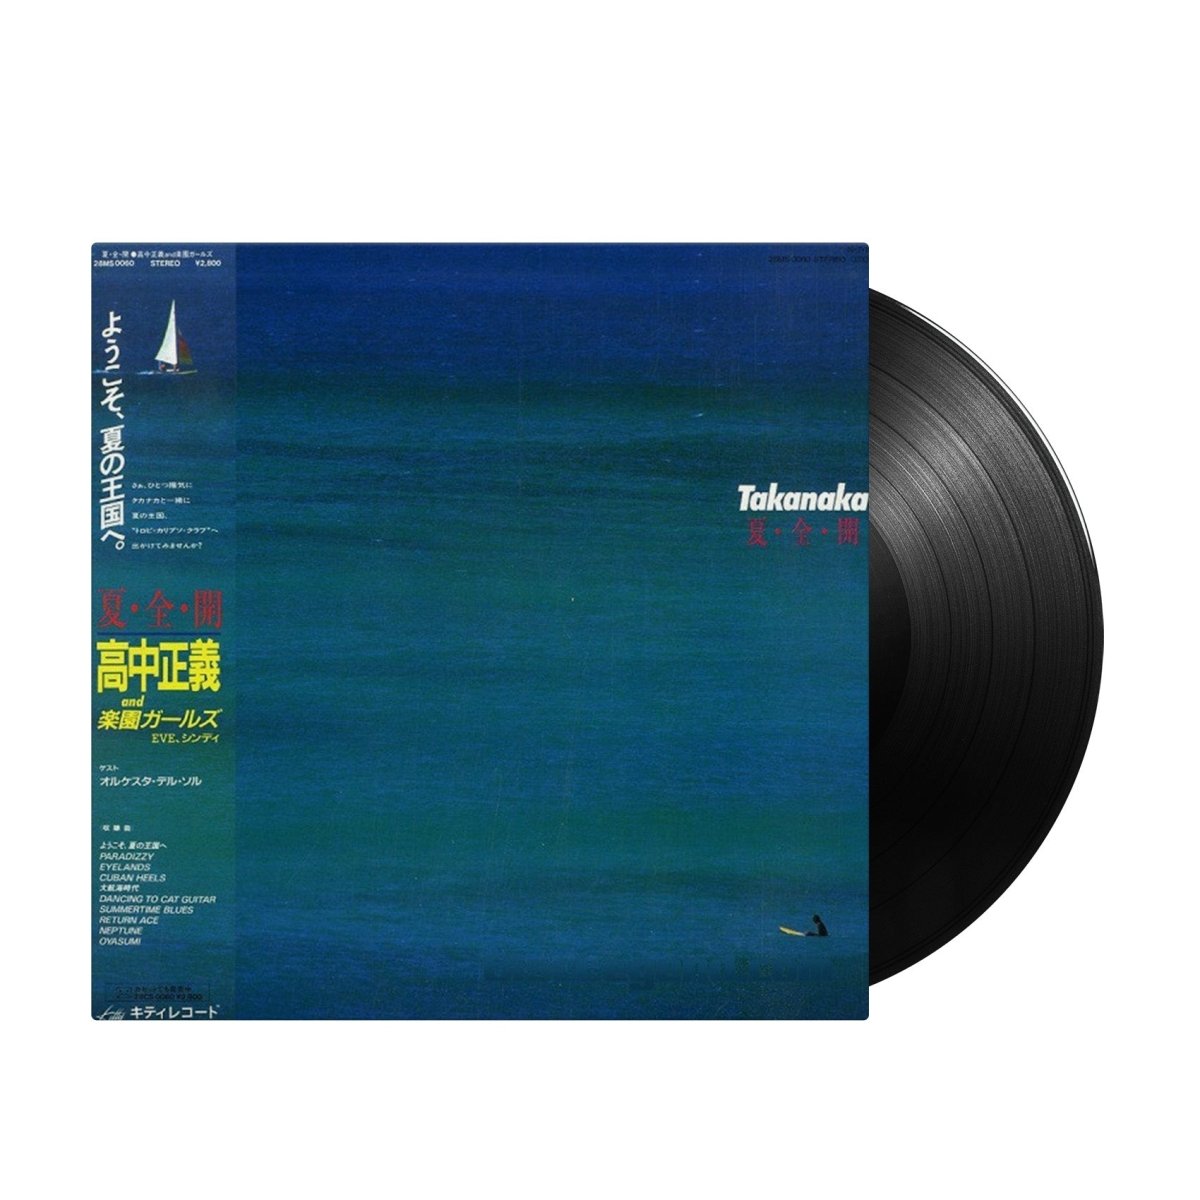 Takanaka - 夏・全・開 (Japan Import) - Inner Ocean Records